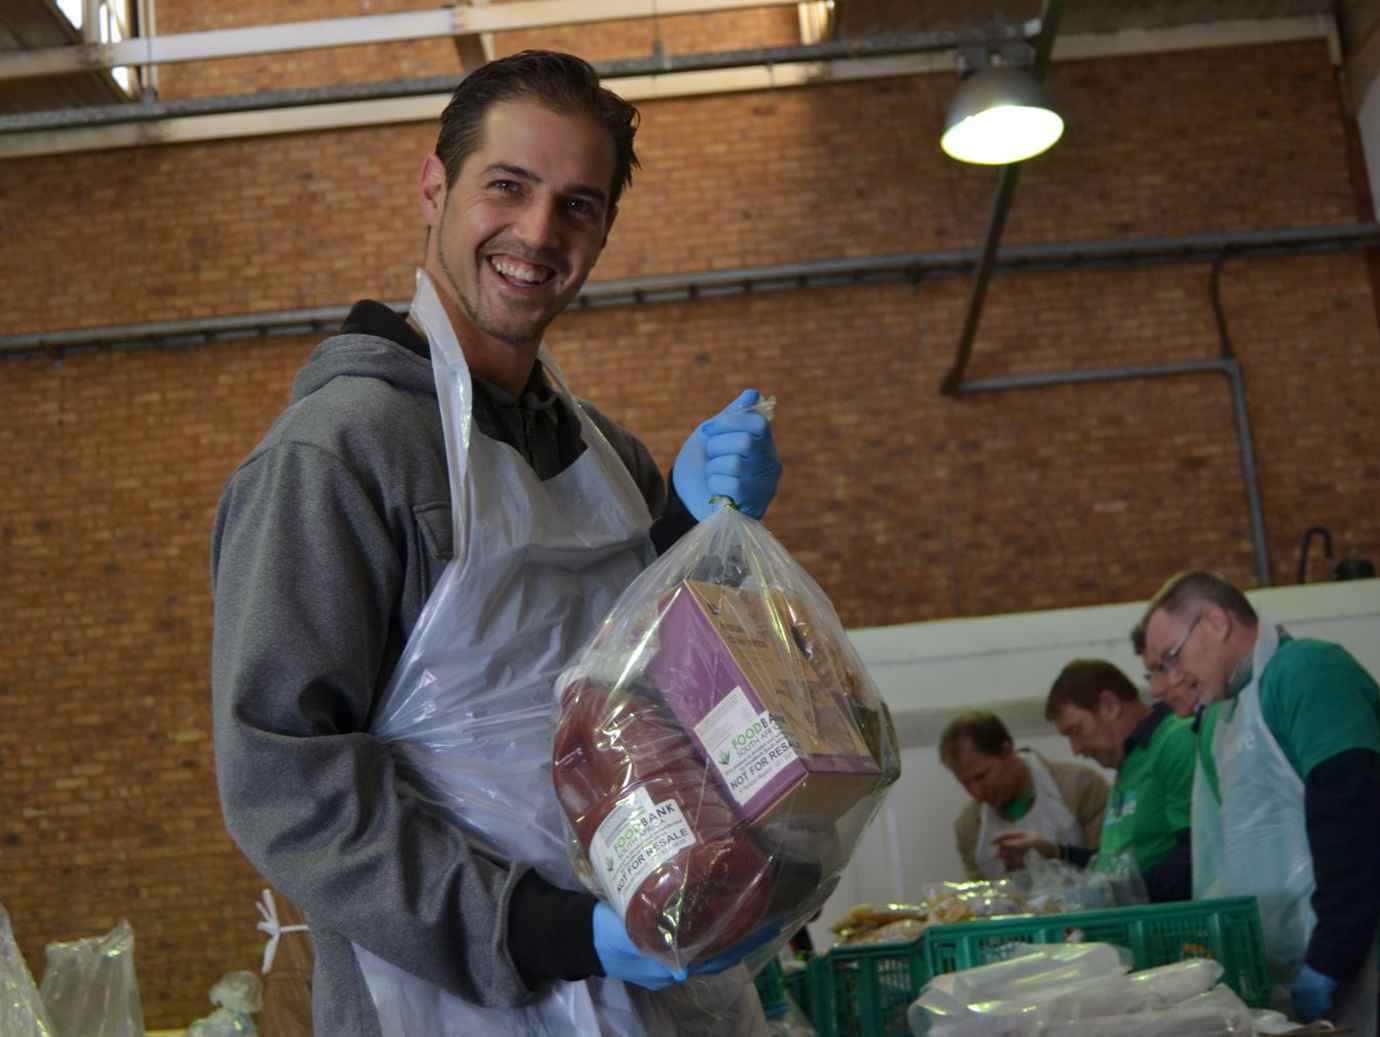 Smiling man organising food essentials